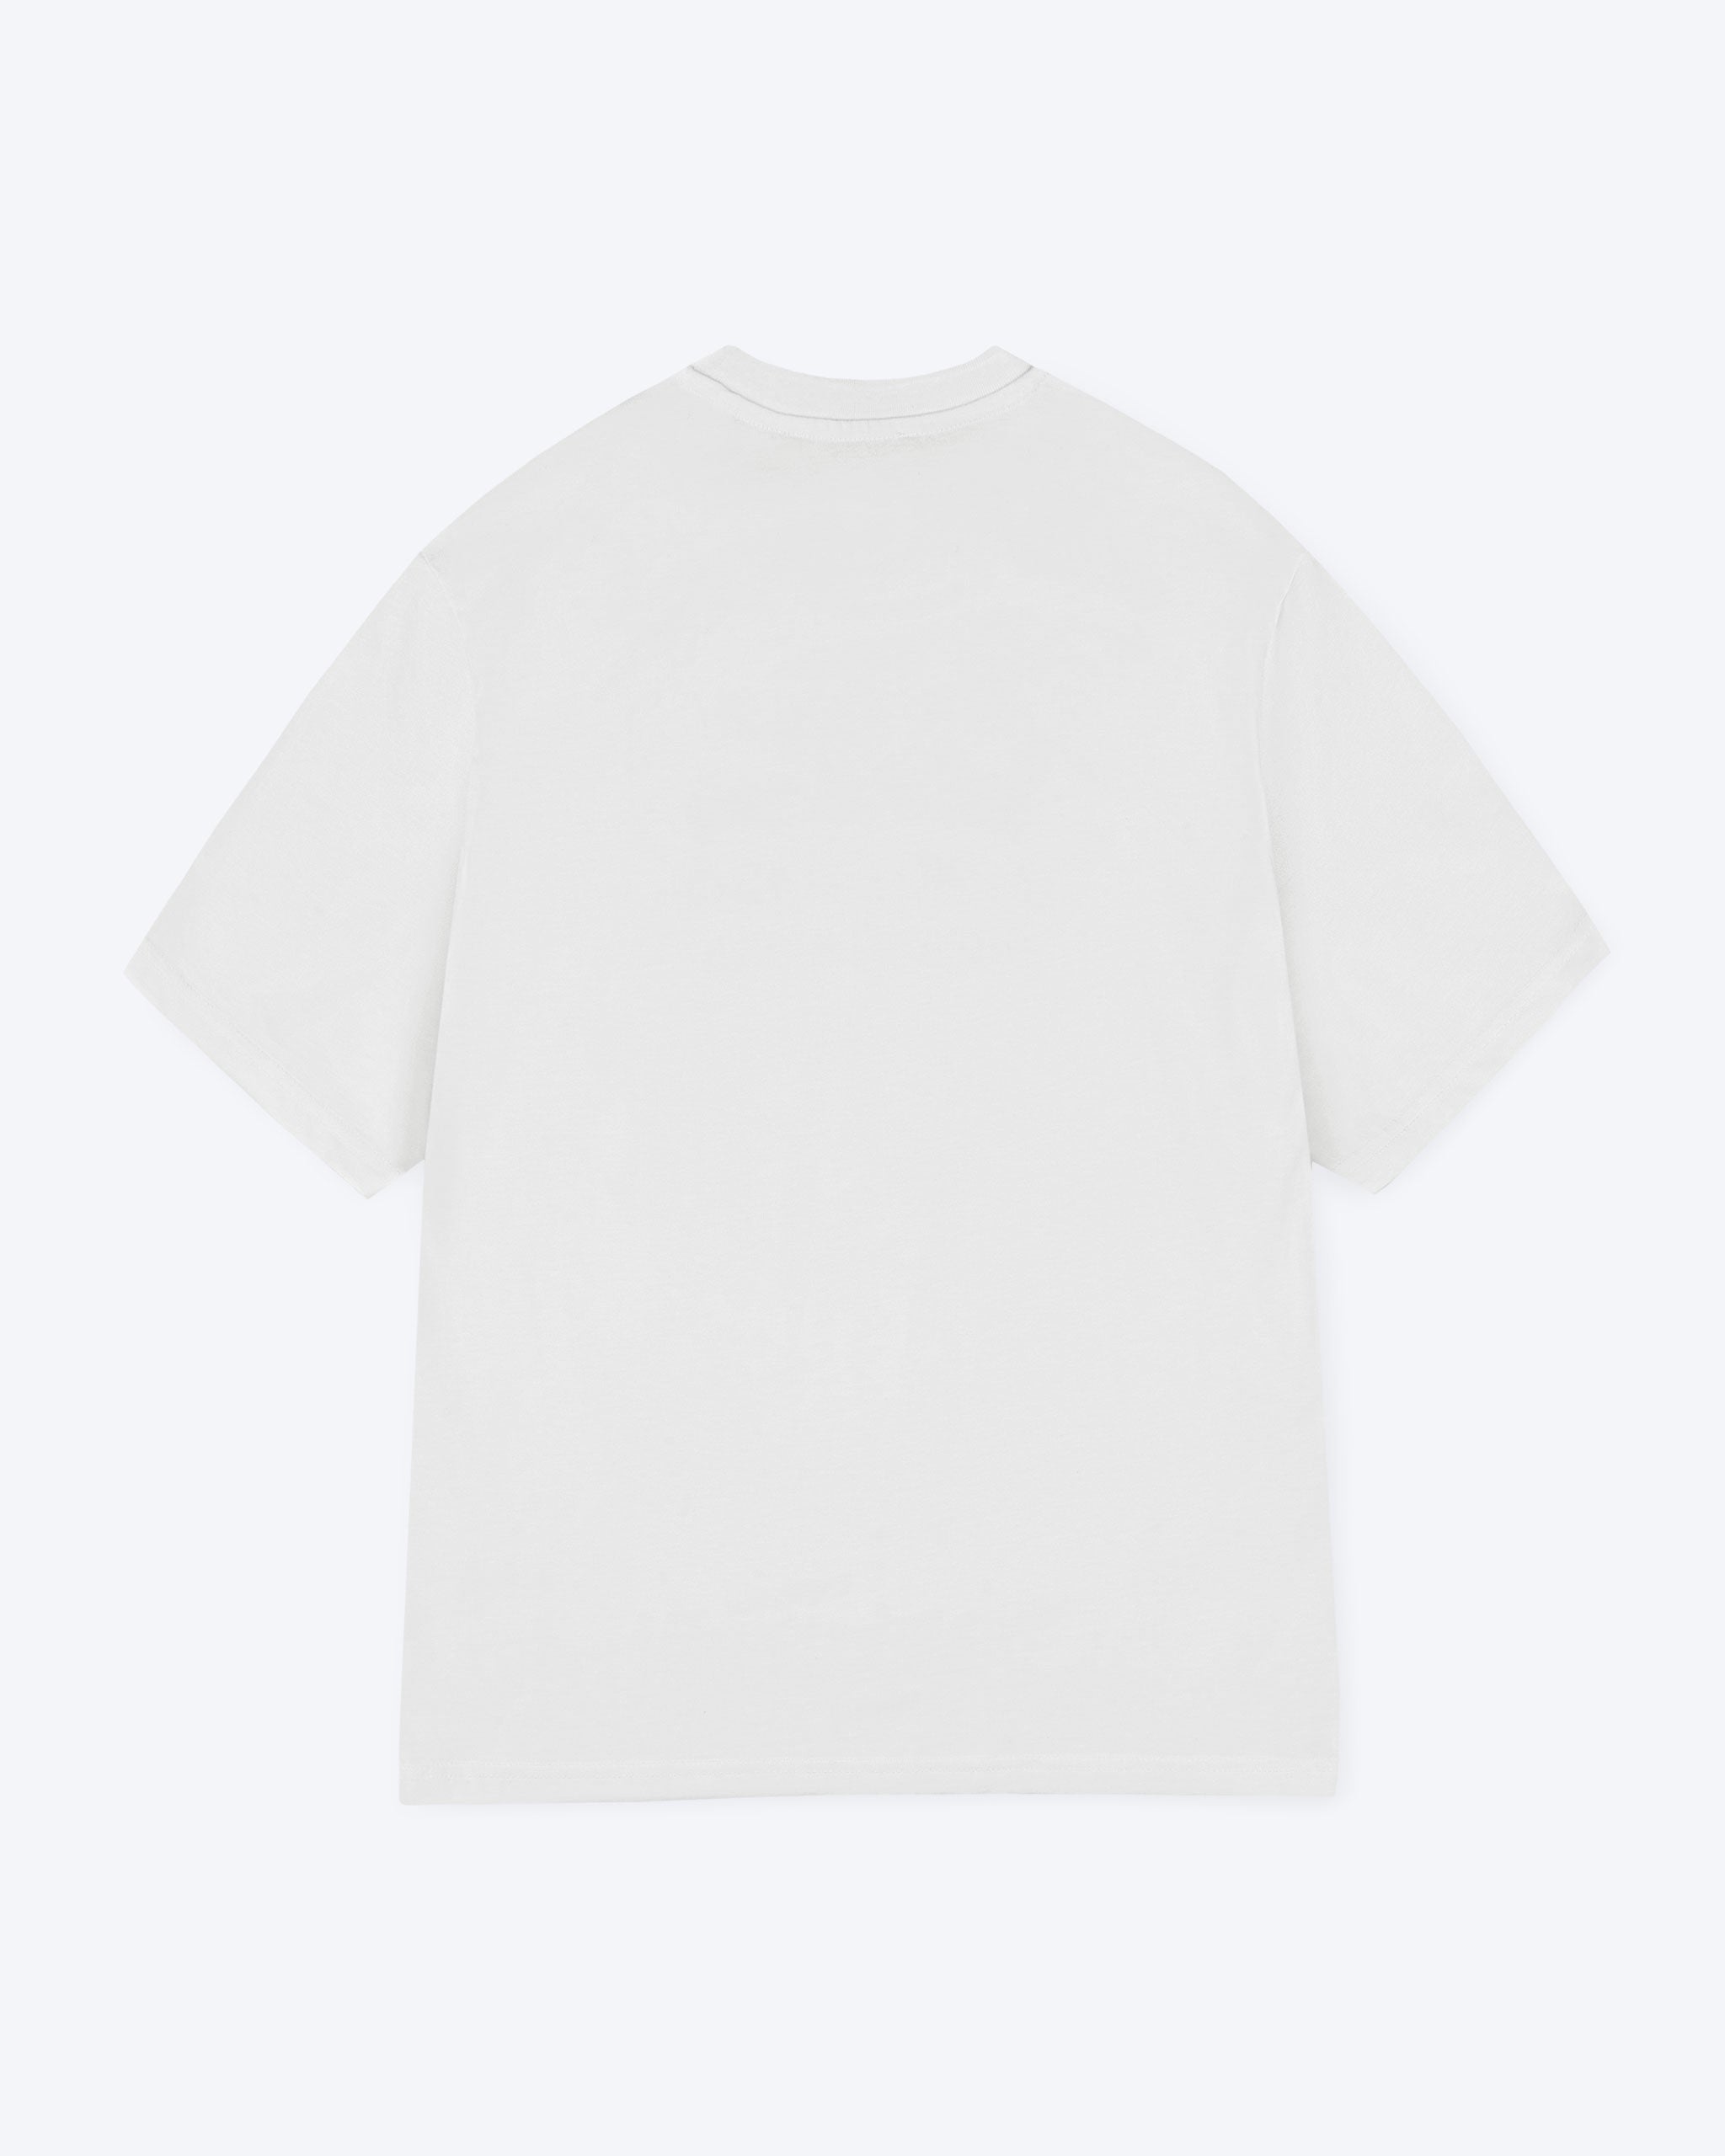 Ein weißes T-Shirt mit nichts als Backprint. 